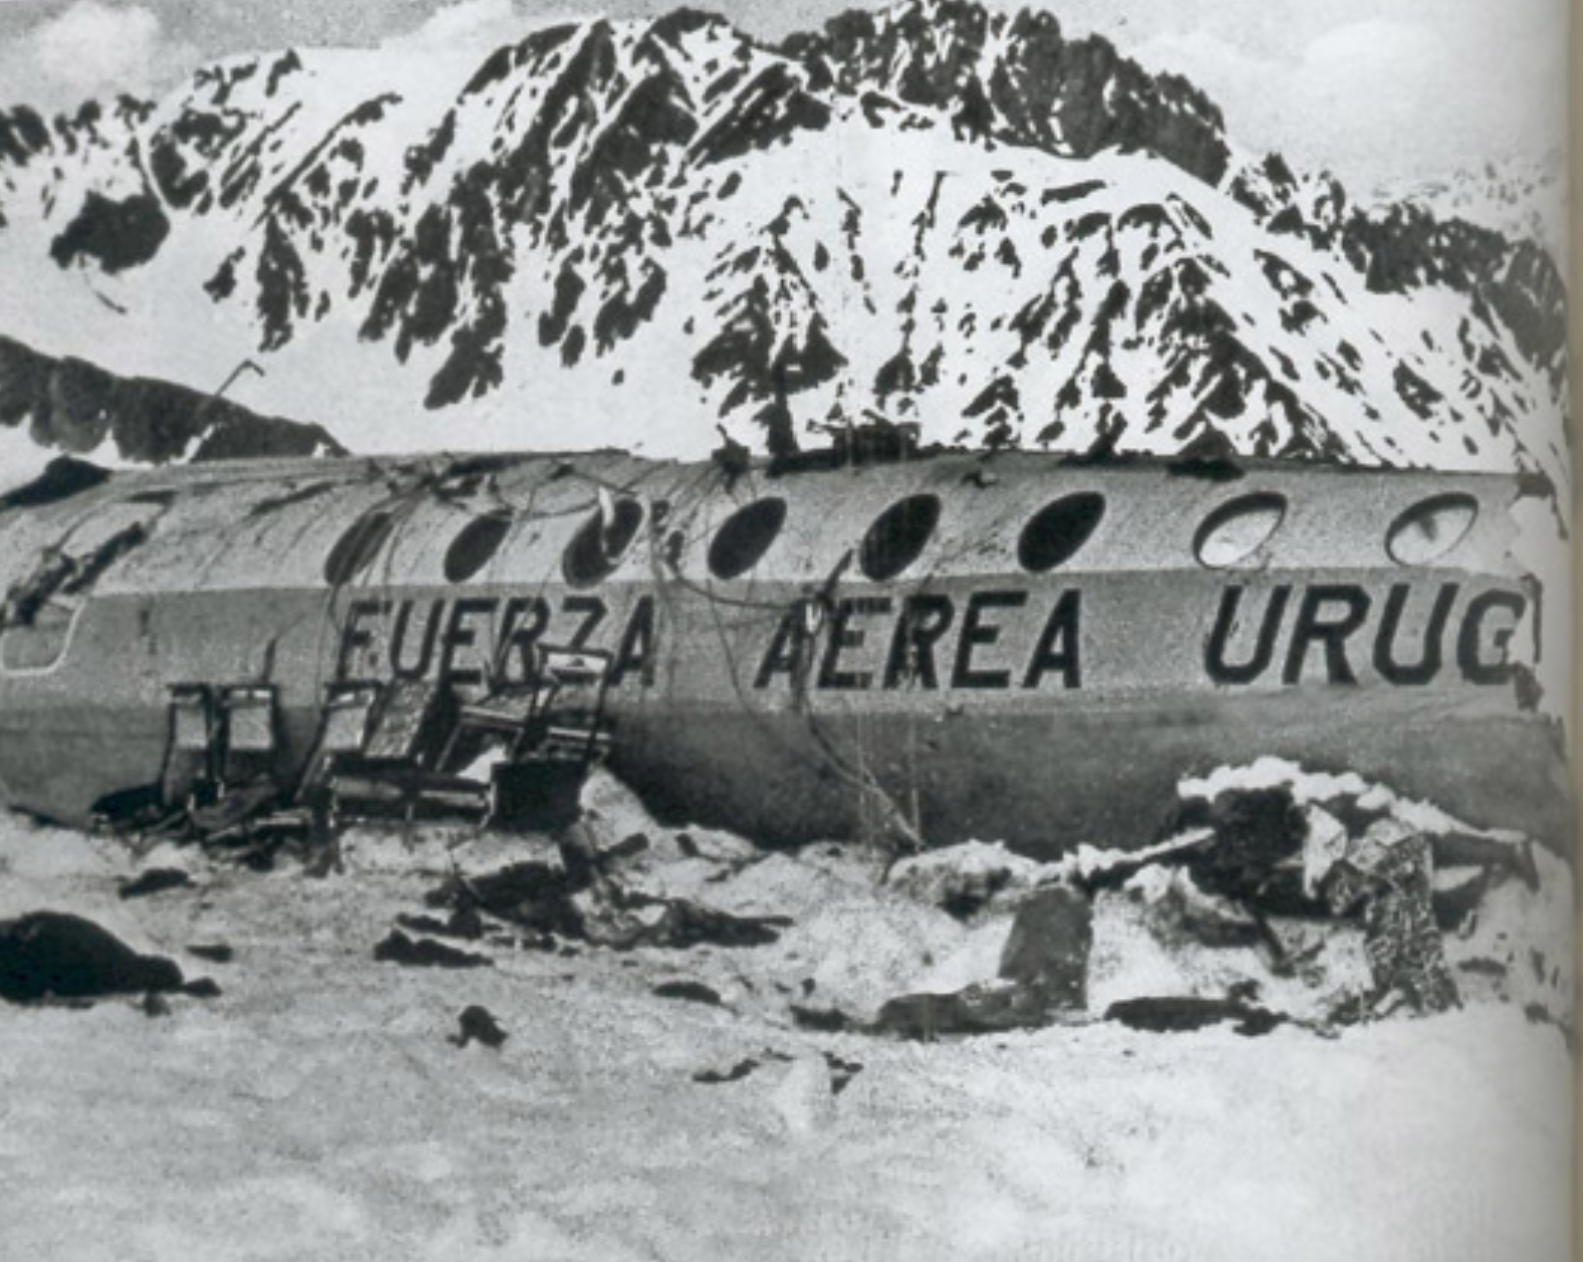 Рейс 571 уругвайских ВВС В Андах. 13 Октября 1972 года чудо в Андах.